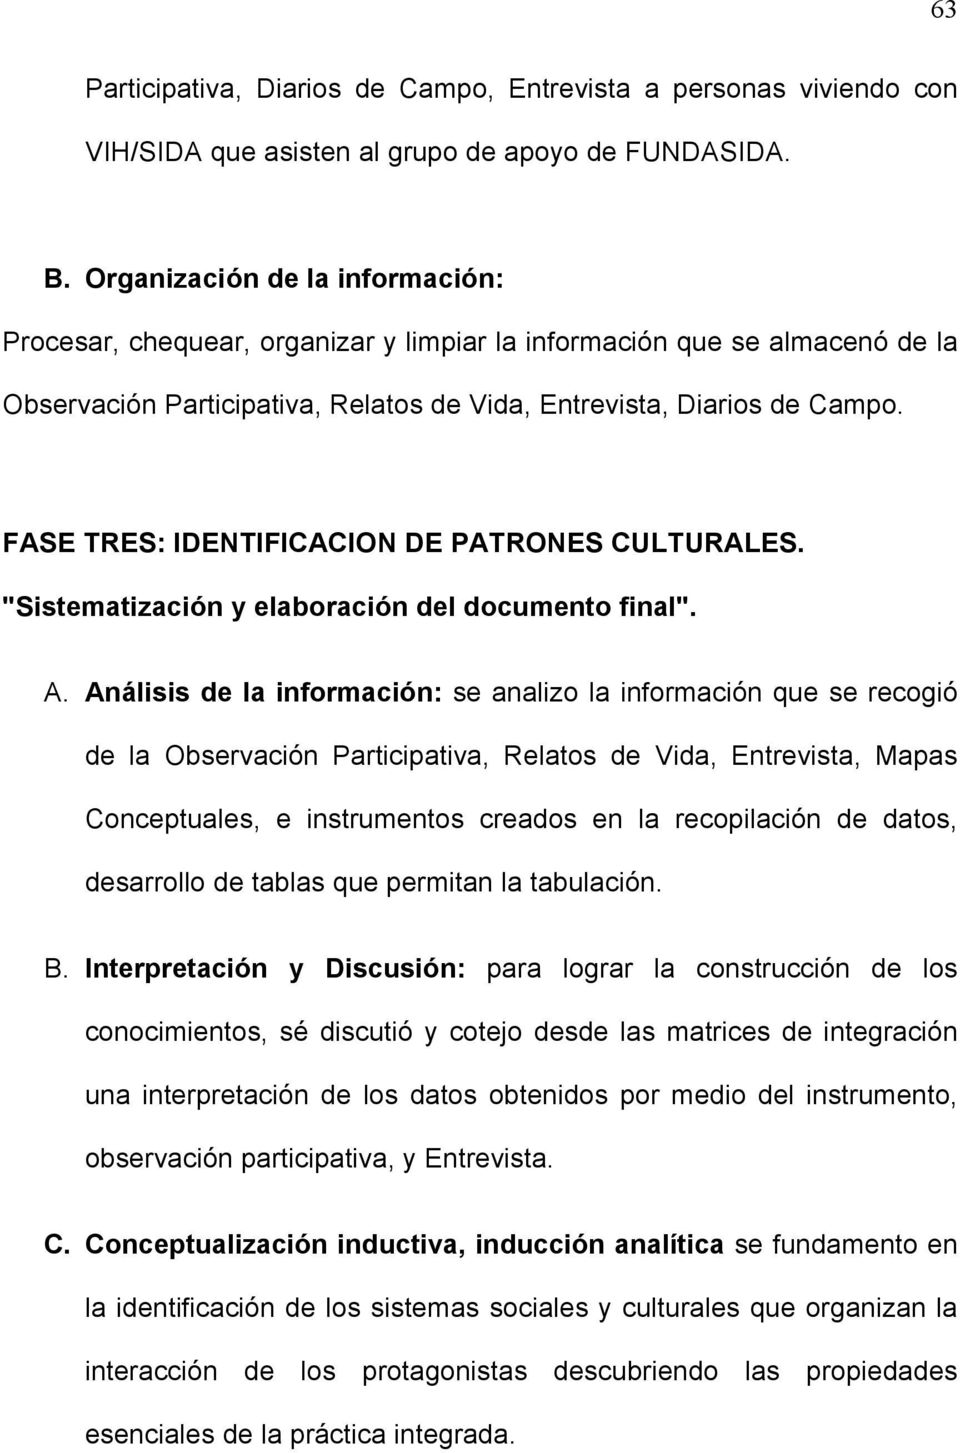 FASE TRES: IDENTIFICACION DE PATRONES CULTURALES. "Sistematización y elaboración del documento final". A.